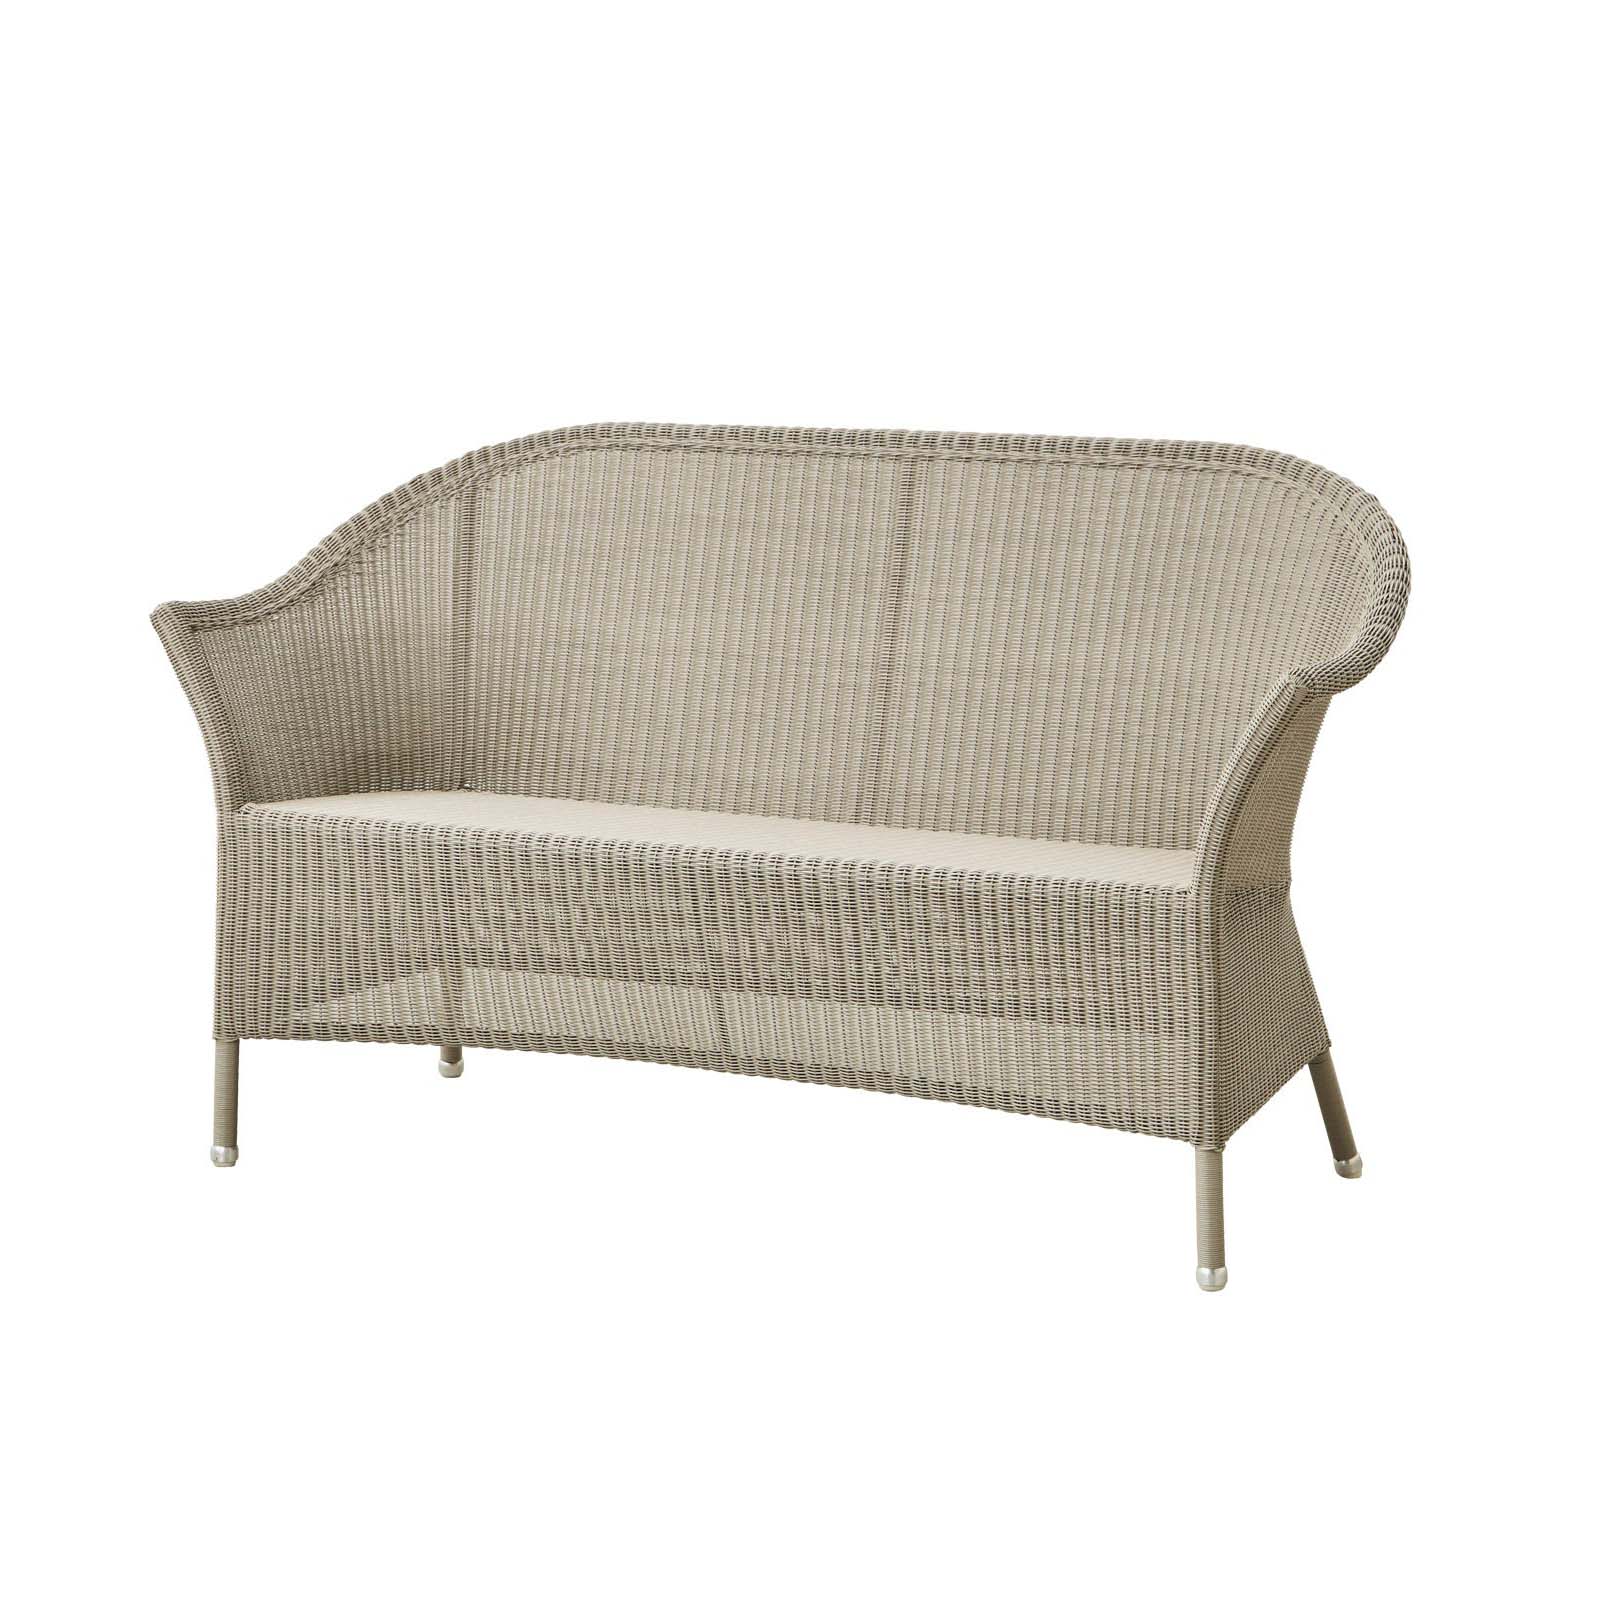 Lansing 2-Sitzer Sofa aus Cane-line Weave in Natural mit Kissen aus Cane-line Natté in White